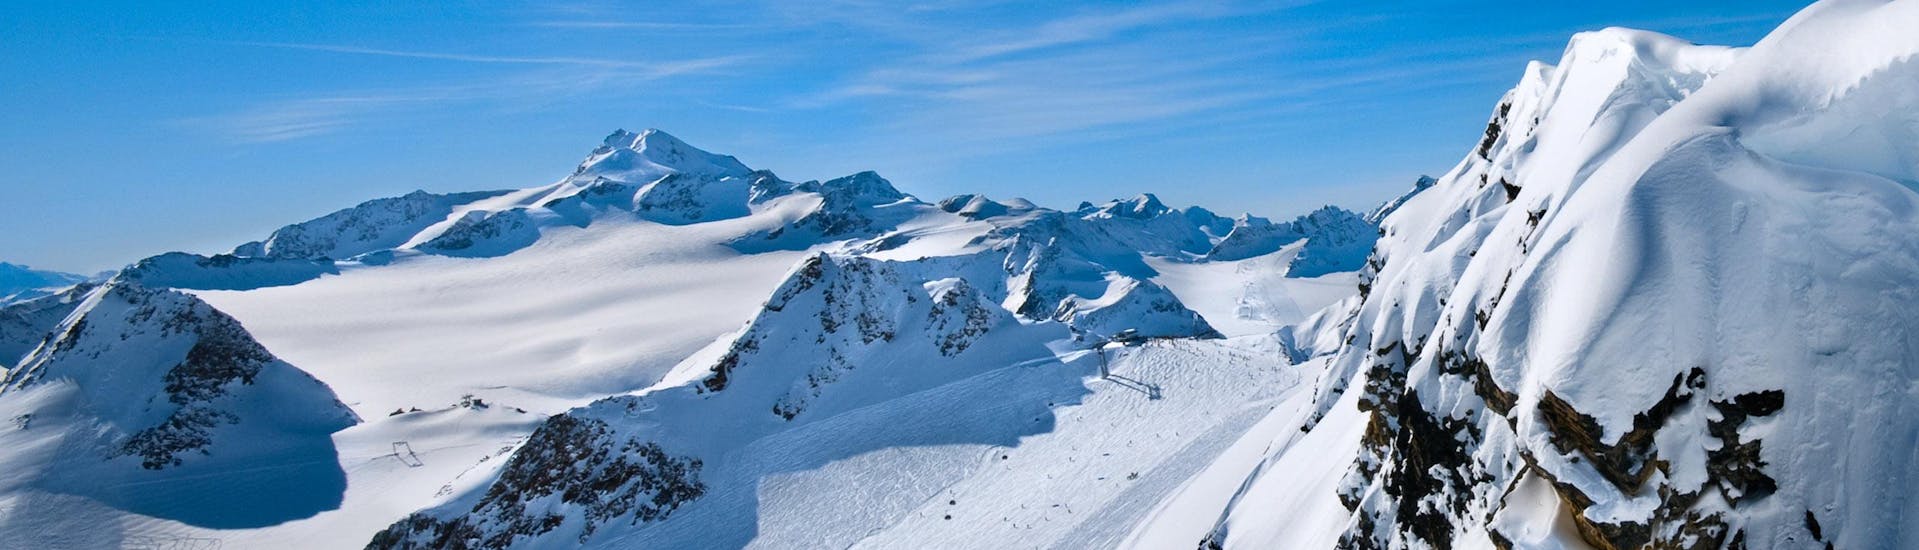 Ausblick auf die sonnige Berglandschaft beim Skifahren lernen mit einer Skischule im Skigebiet Paznaun.